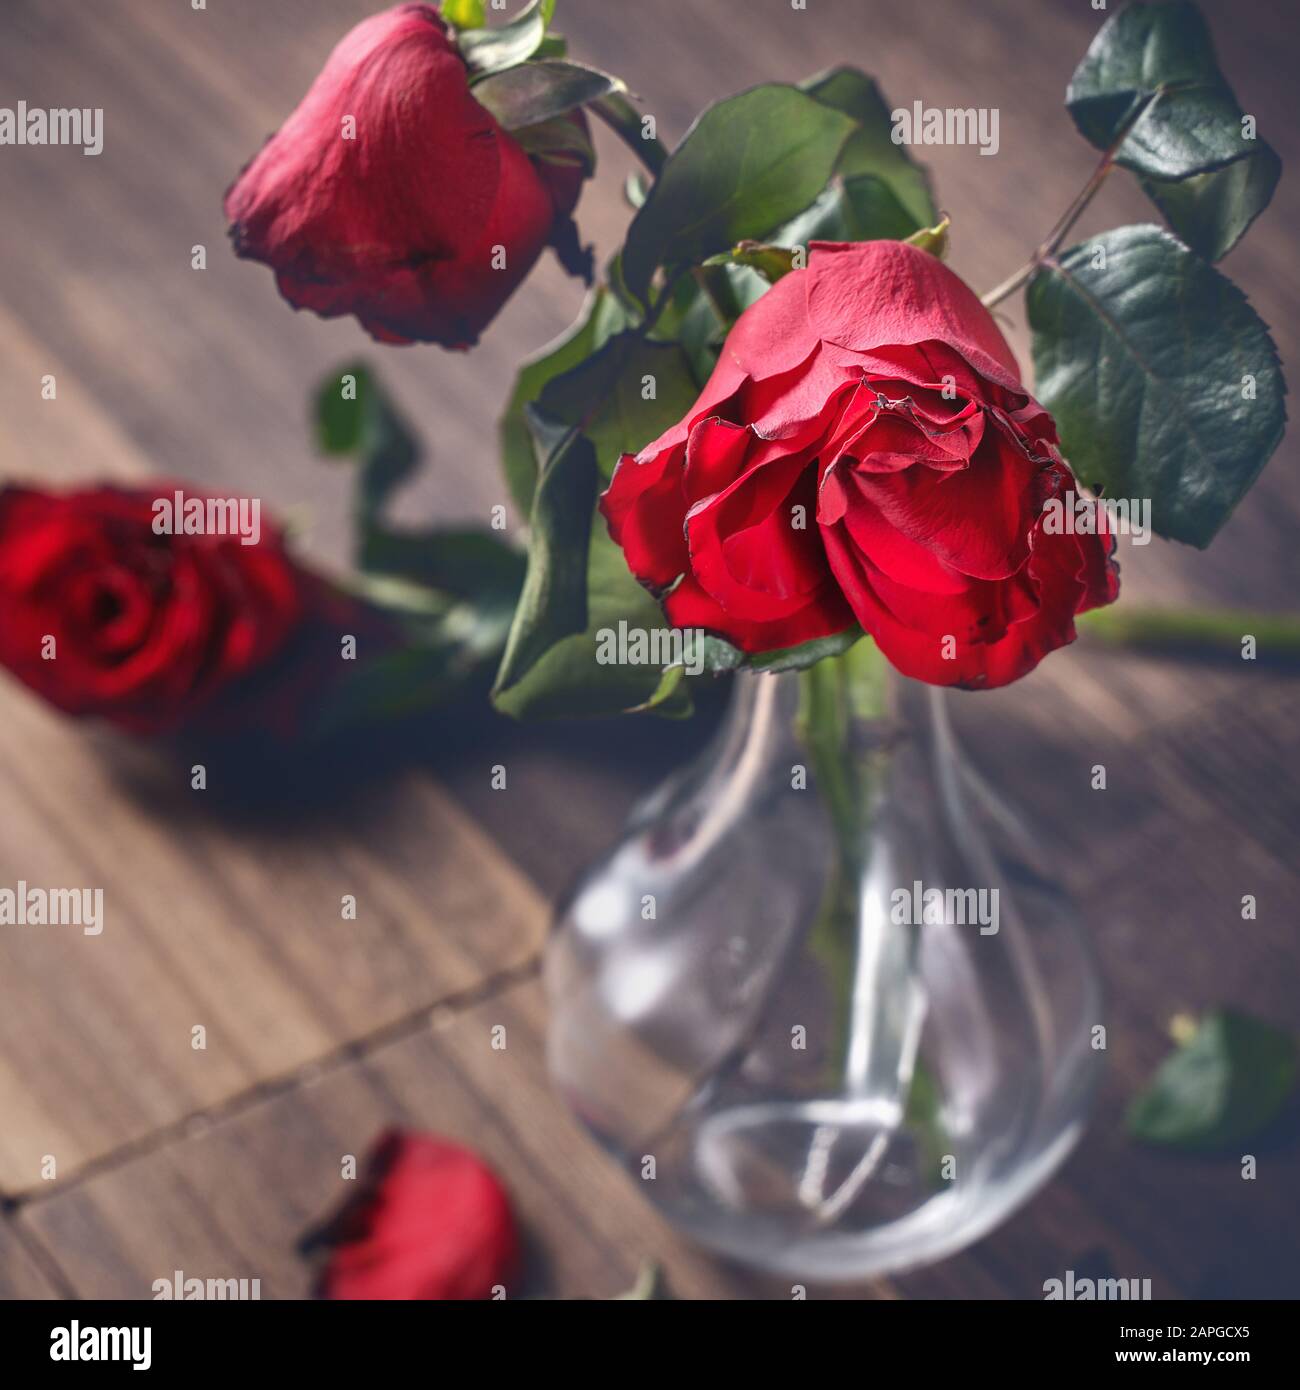 Broken Red Rose On Wooden Stockfotos und -bilder Kaufen - Alamy